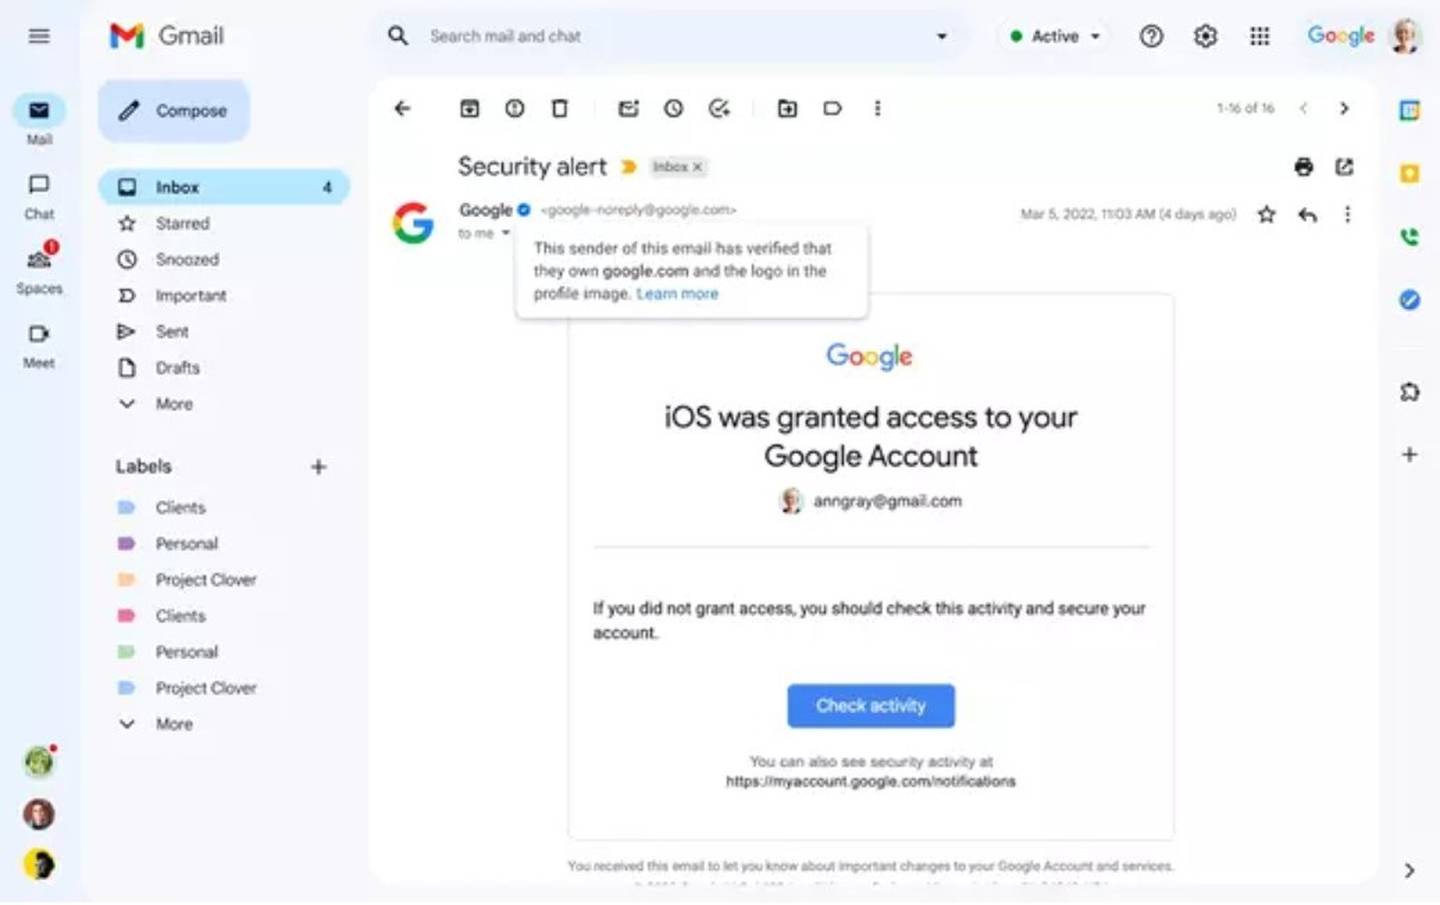 Un bug dans Gmail permet aux cybercriminels d'utiliser le badge bleu pour usurper l'identité d'utilisateurs frauduleux